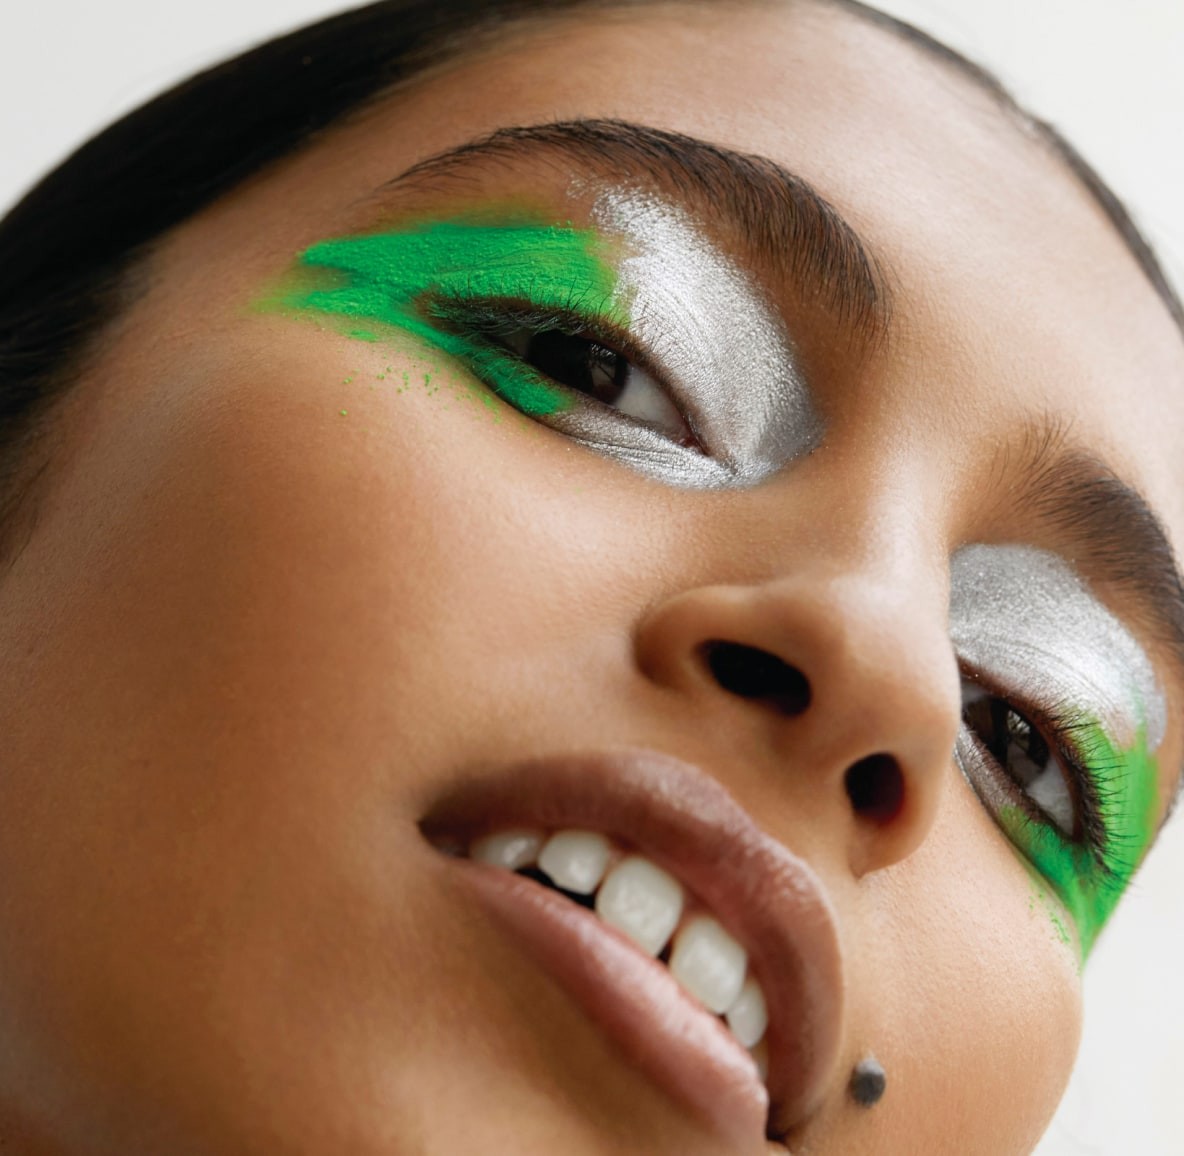 Maquiagens mais ousadas e que valorizam a beleza natural ganharão força (Foto: Pinterest / Divulgação)